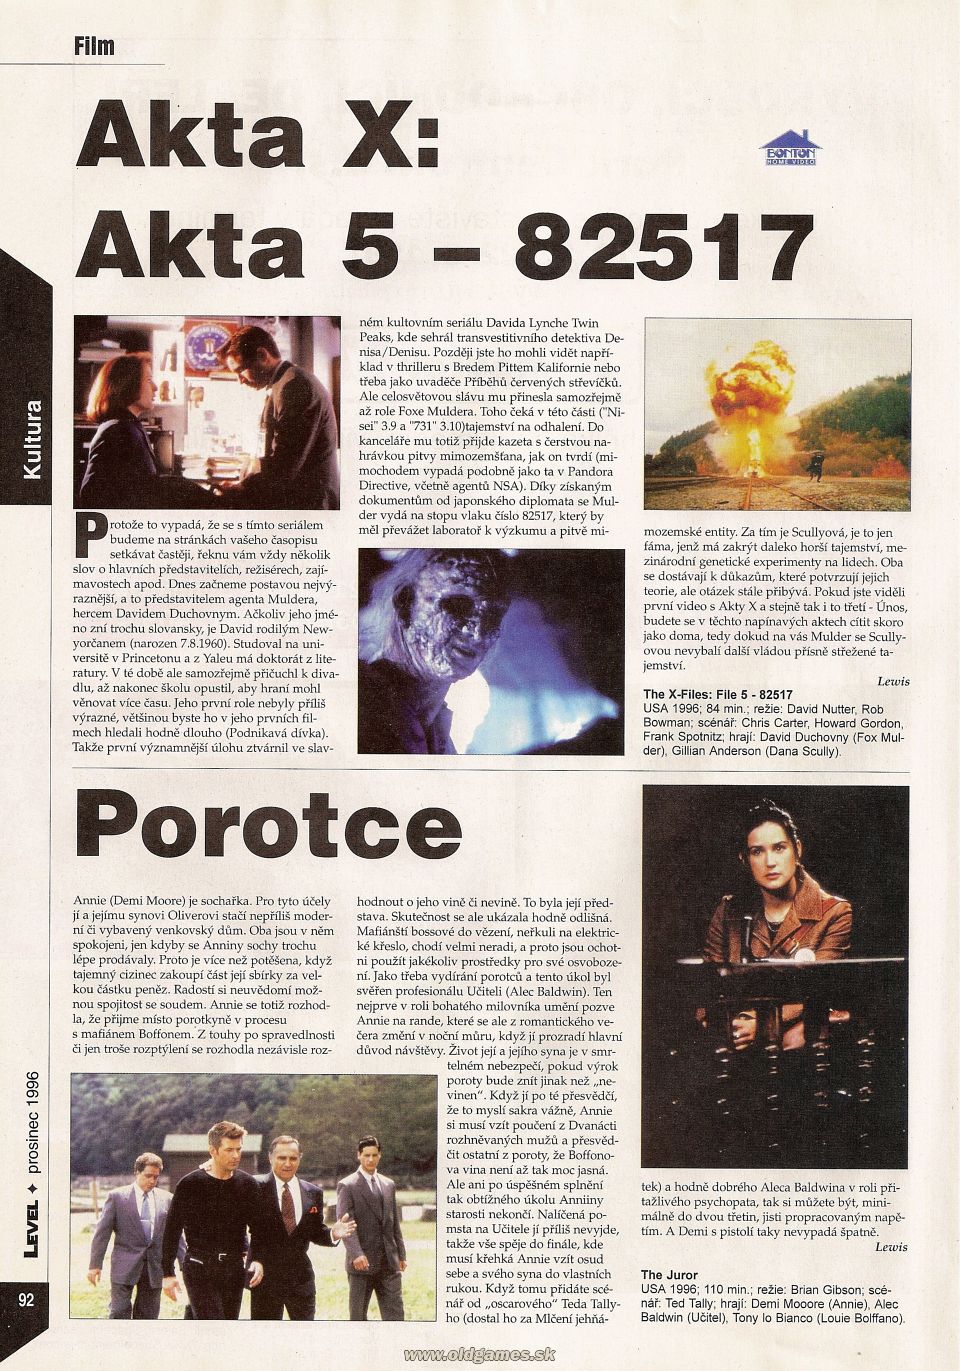 Film: Akta X - Akta 5-82517, Porotce